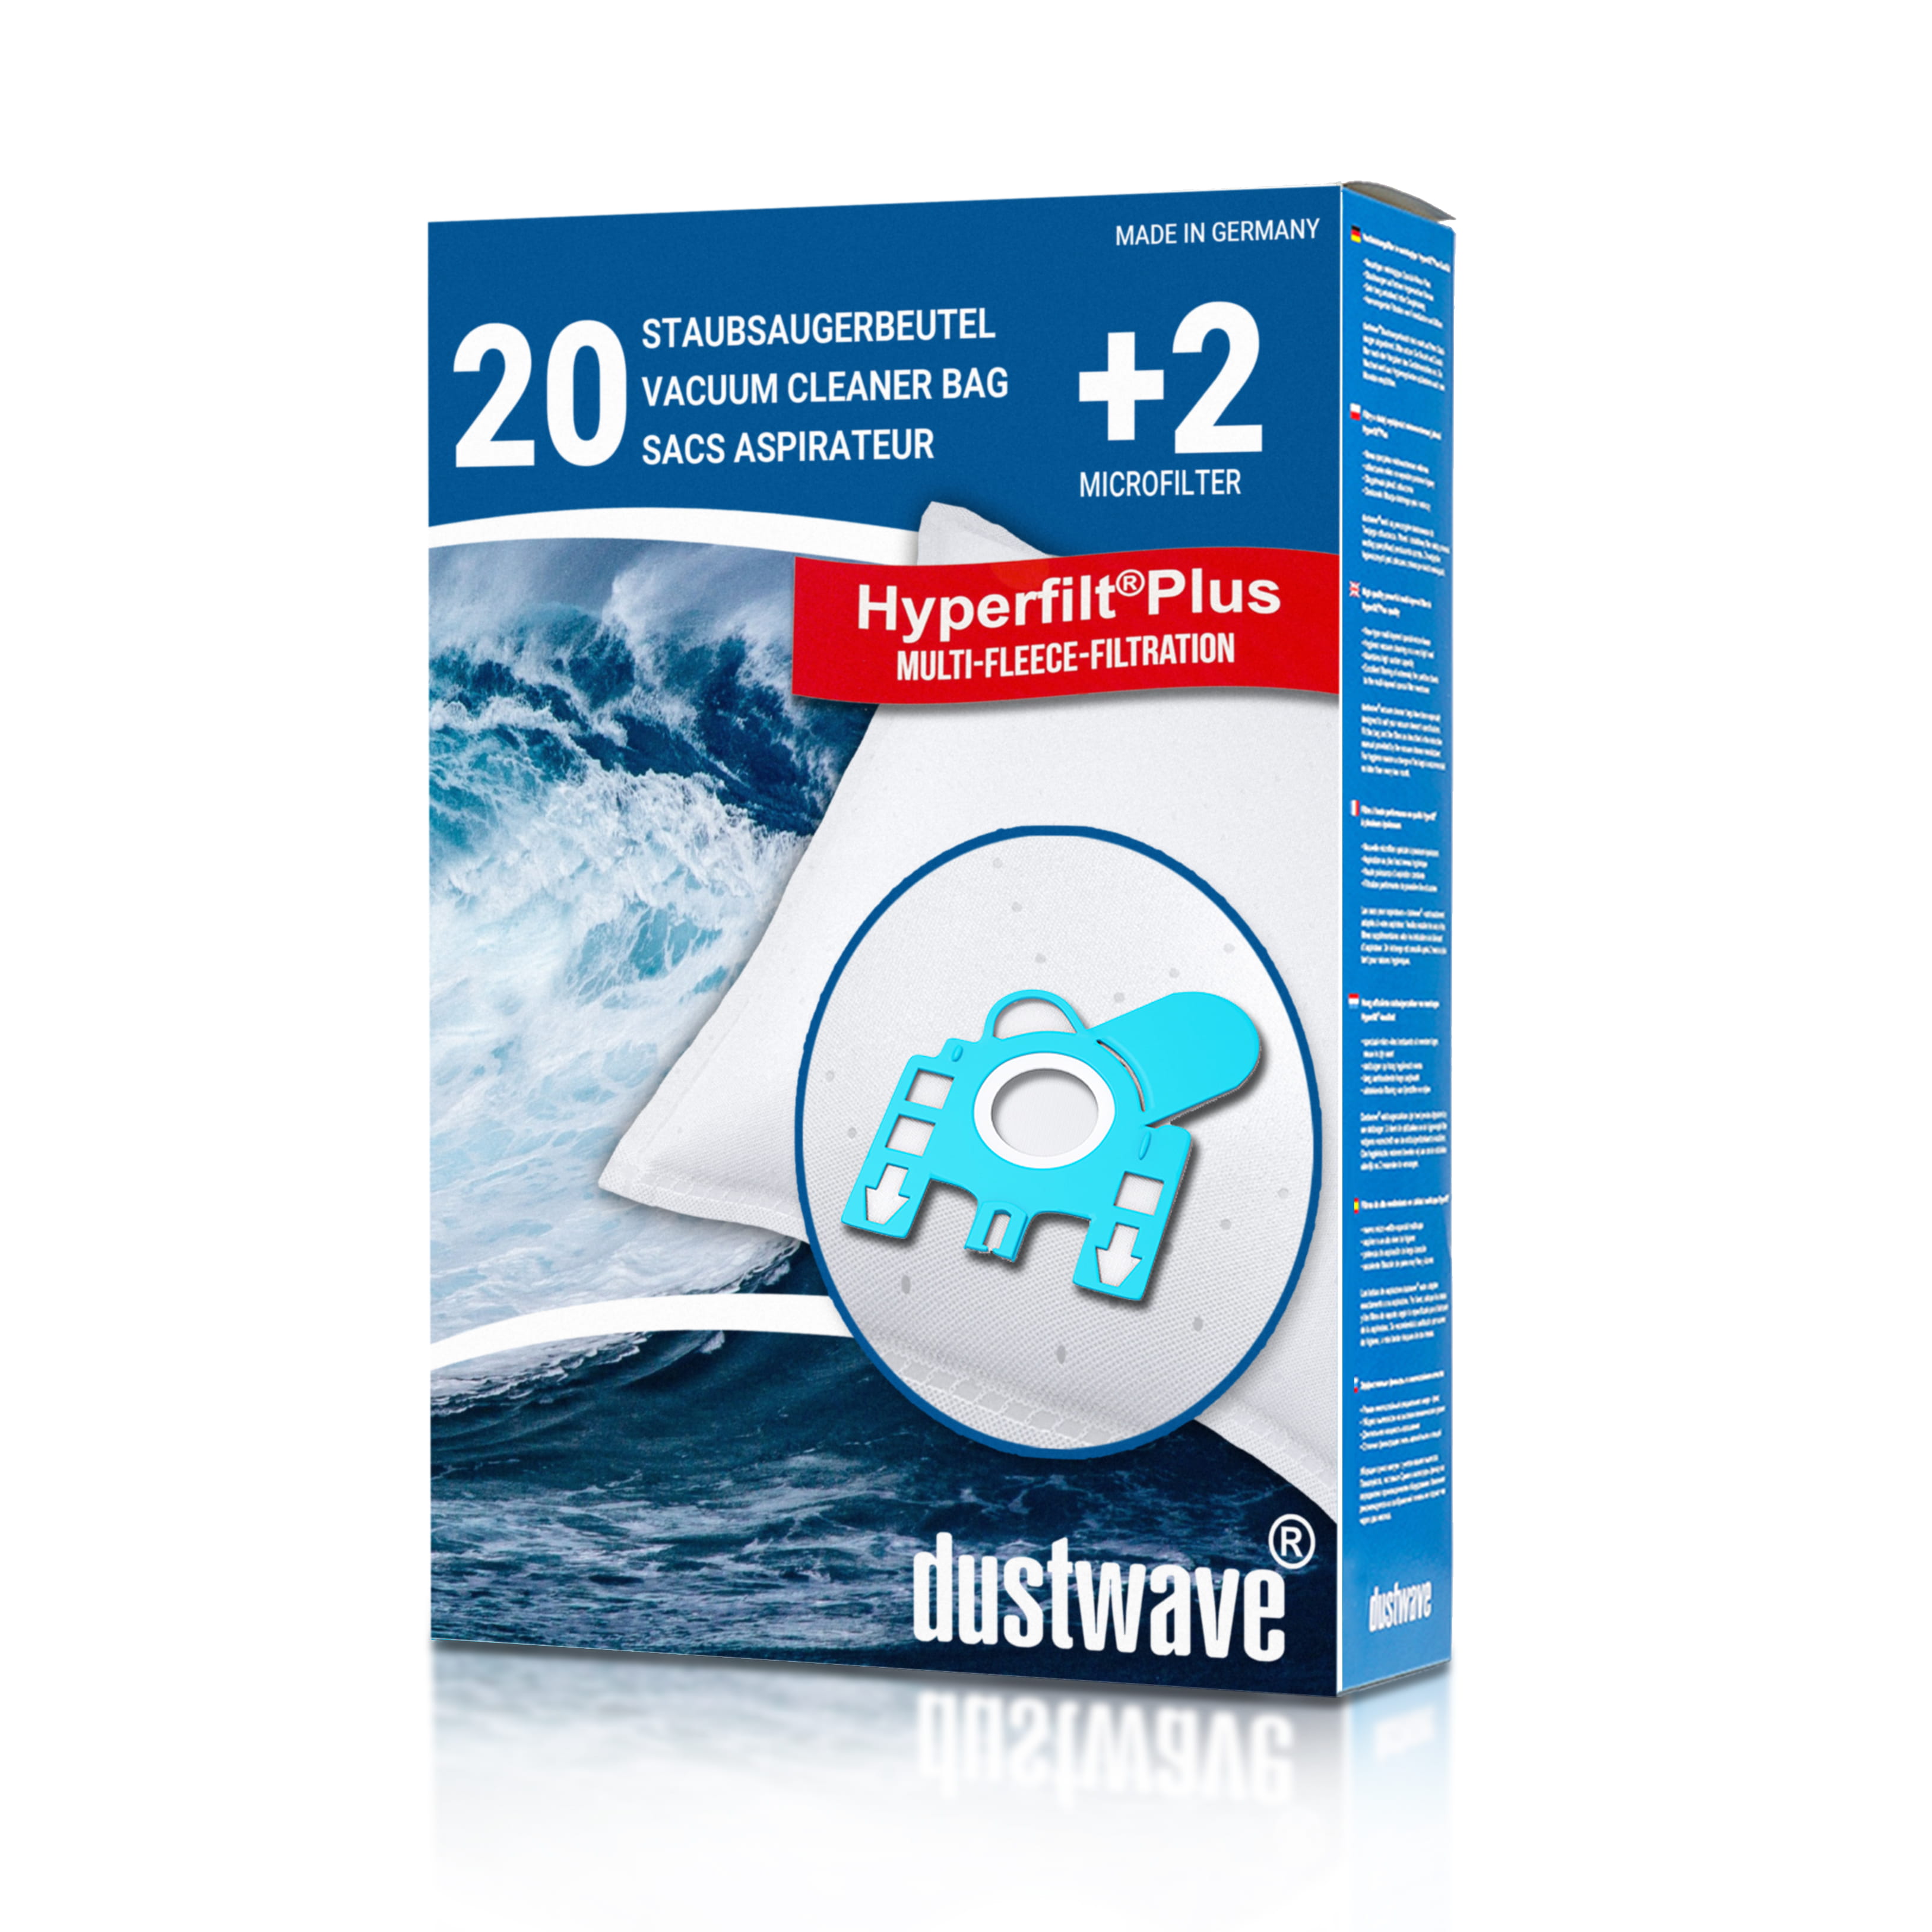 Dustwave® 20 Staubsaugerbeutel für Miele Complete C1 - hocheffizient, mehrlagiges Mikrovlies mit Hygieneverschluss - Made in Germany